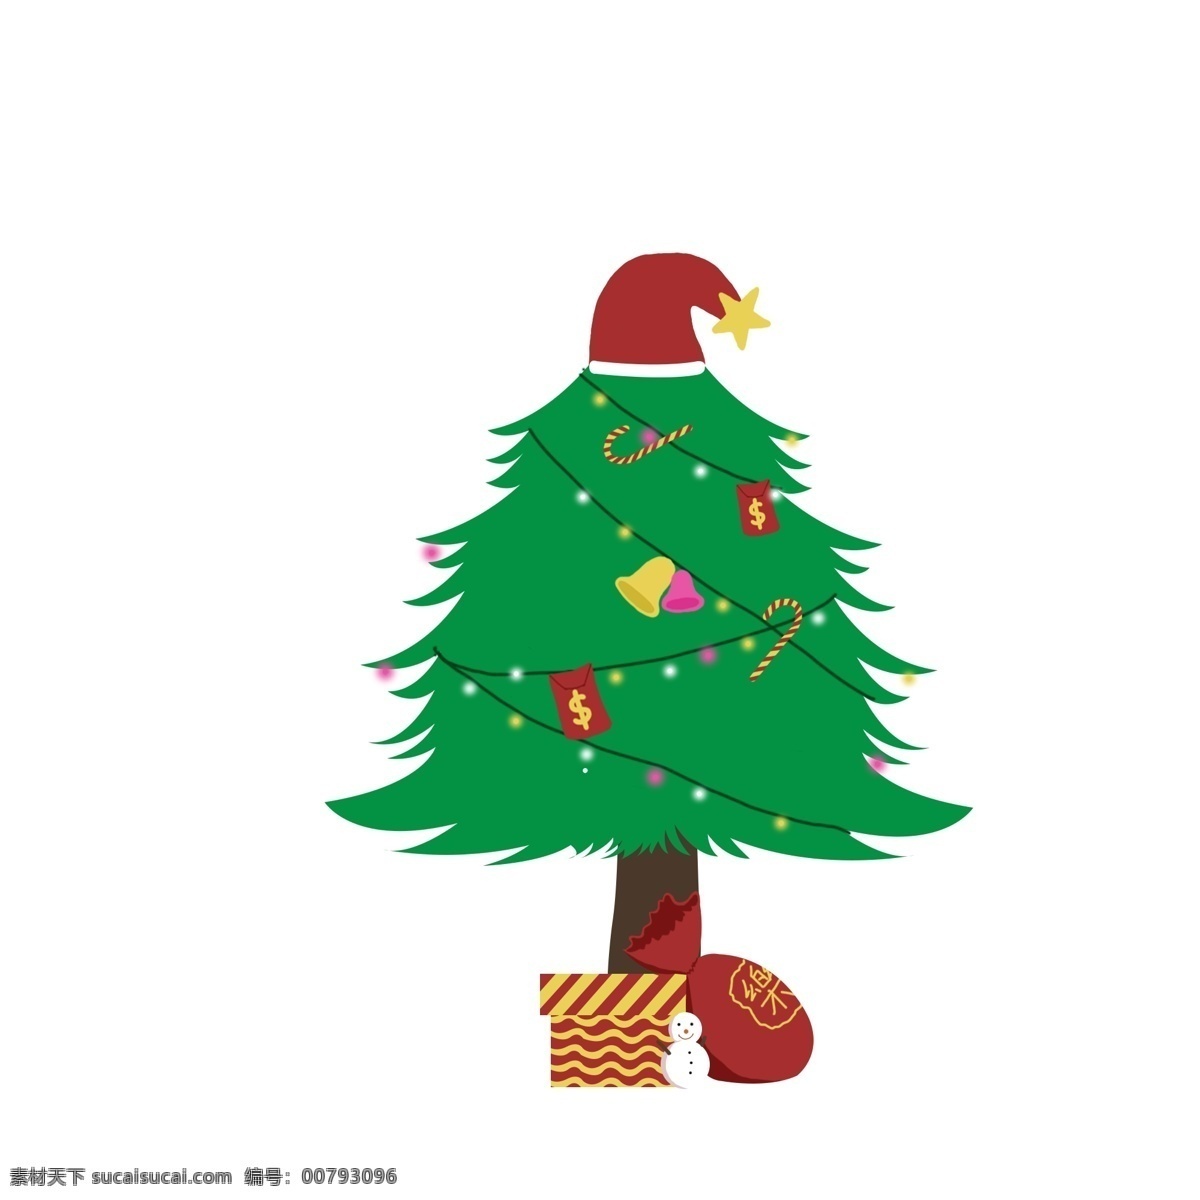 圣诞节 礼物 红包 雪人 圣诞树 西方 圣诞 可商用 西方节日 圣诞帽子